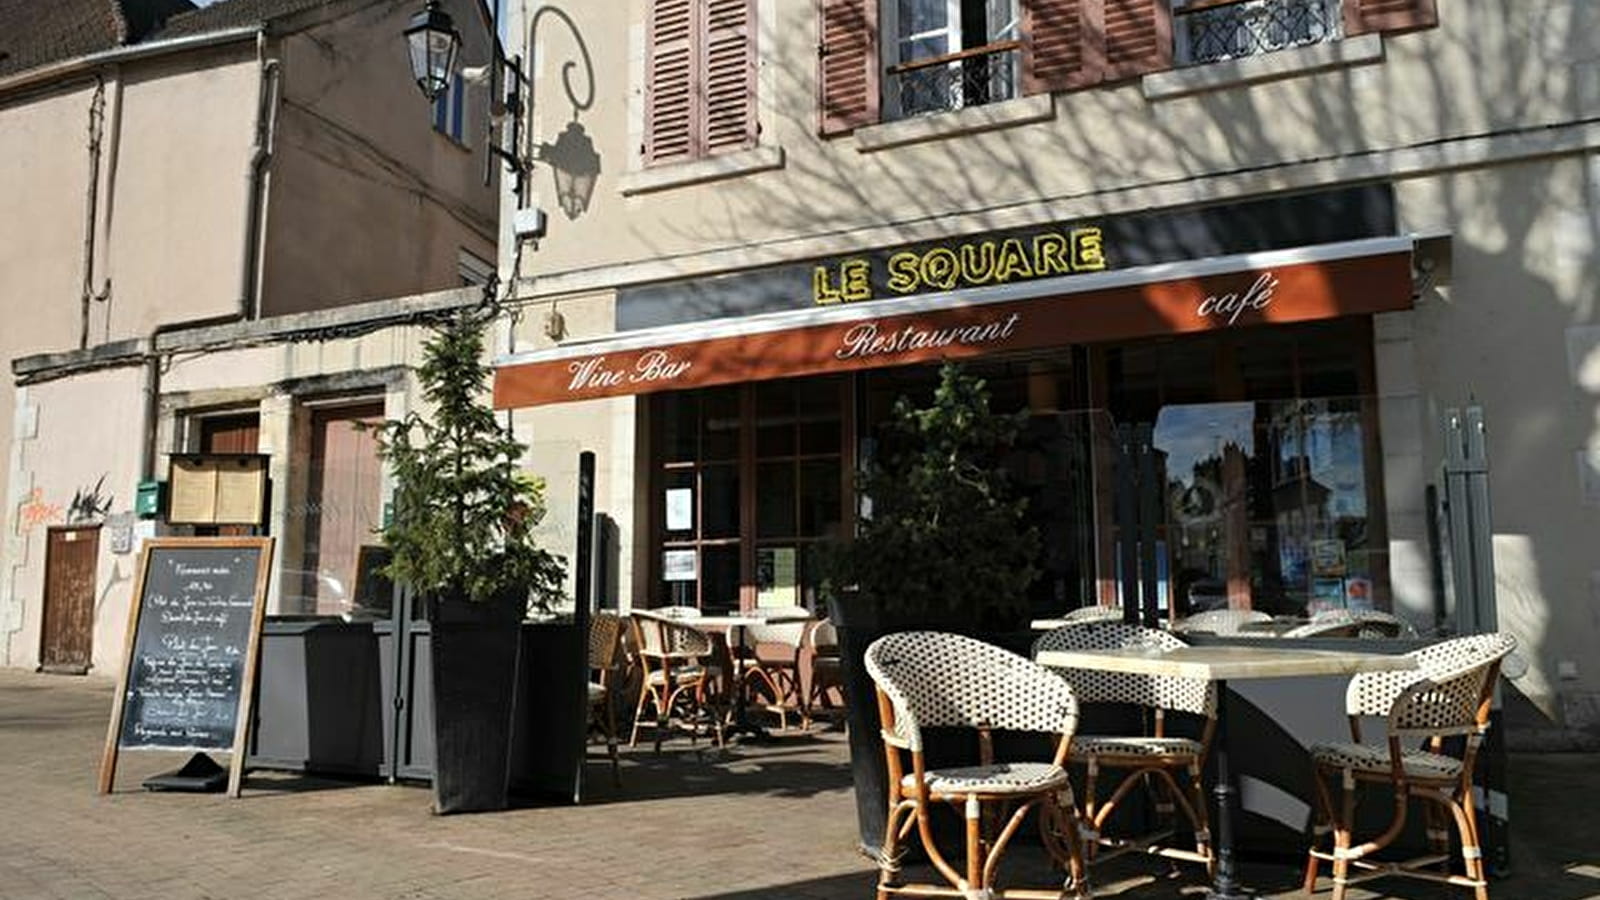 Brasserie Le Square